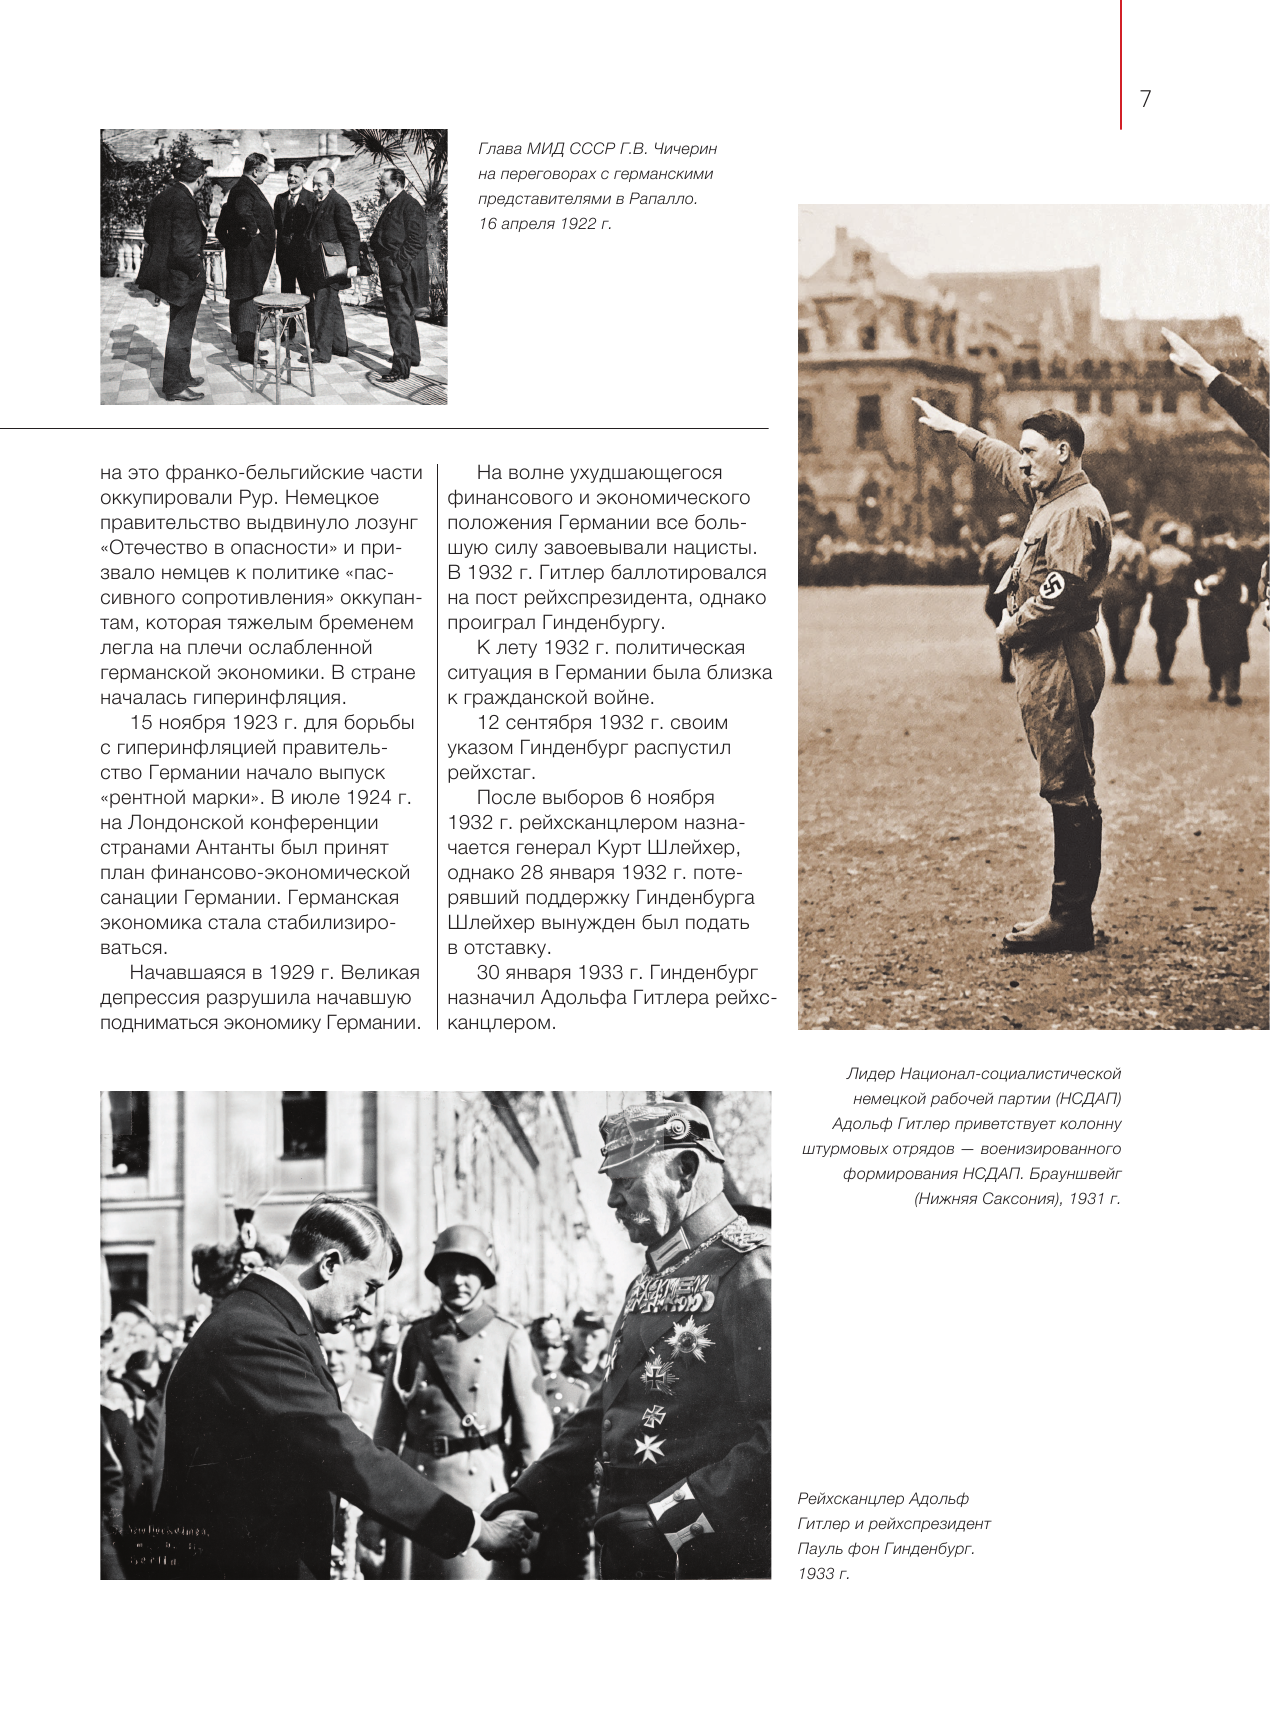 Вторая мировая война. 1939–1945: Цвет войны - фото №10